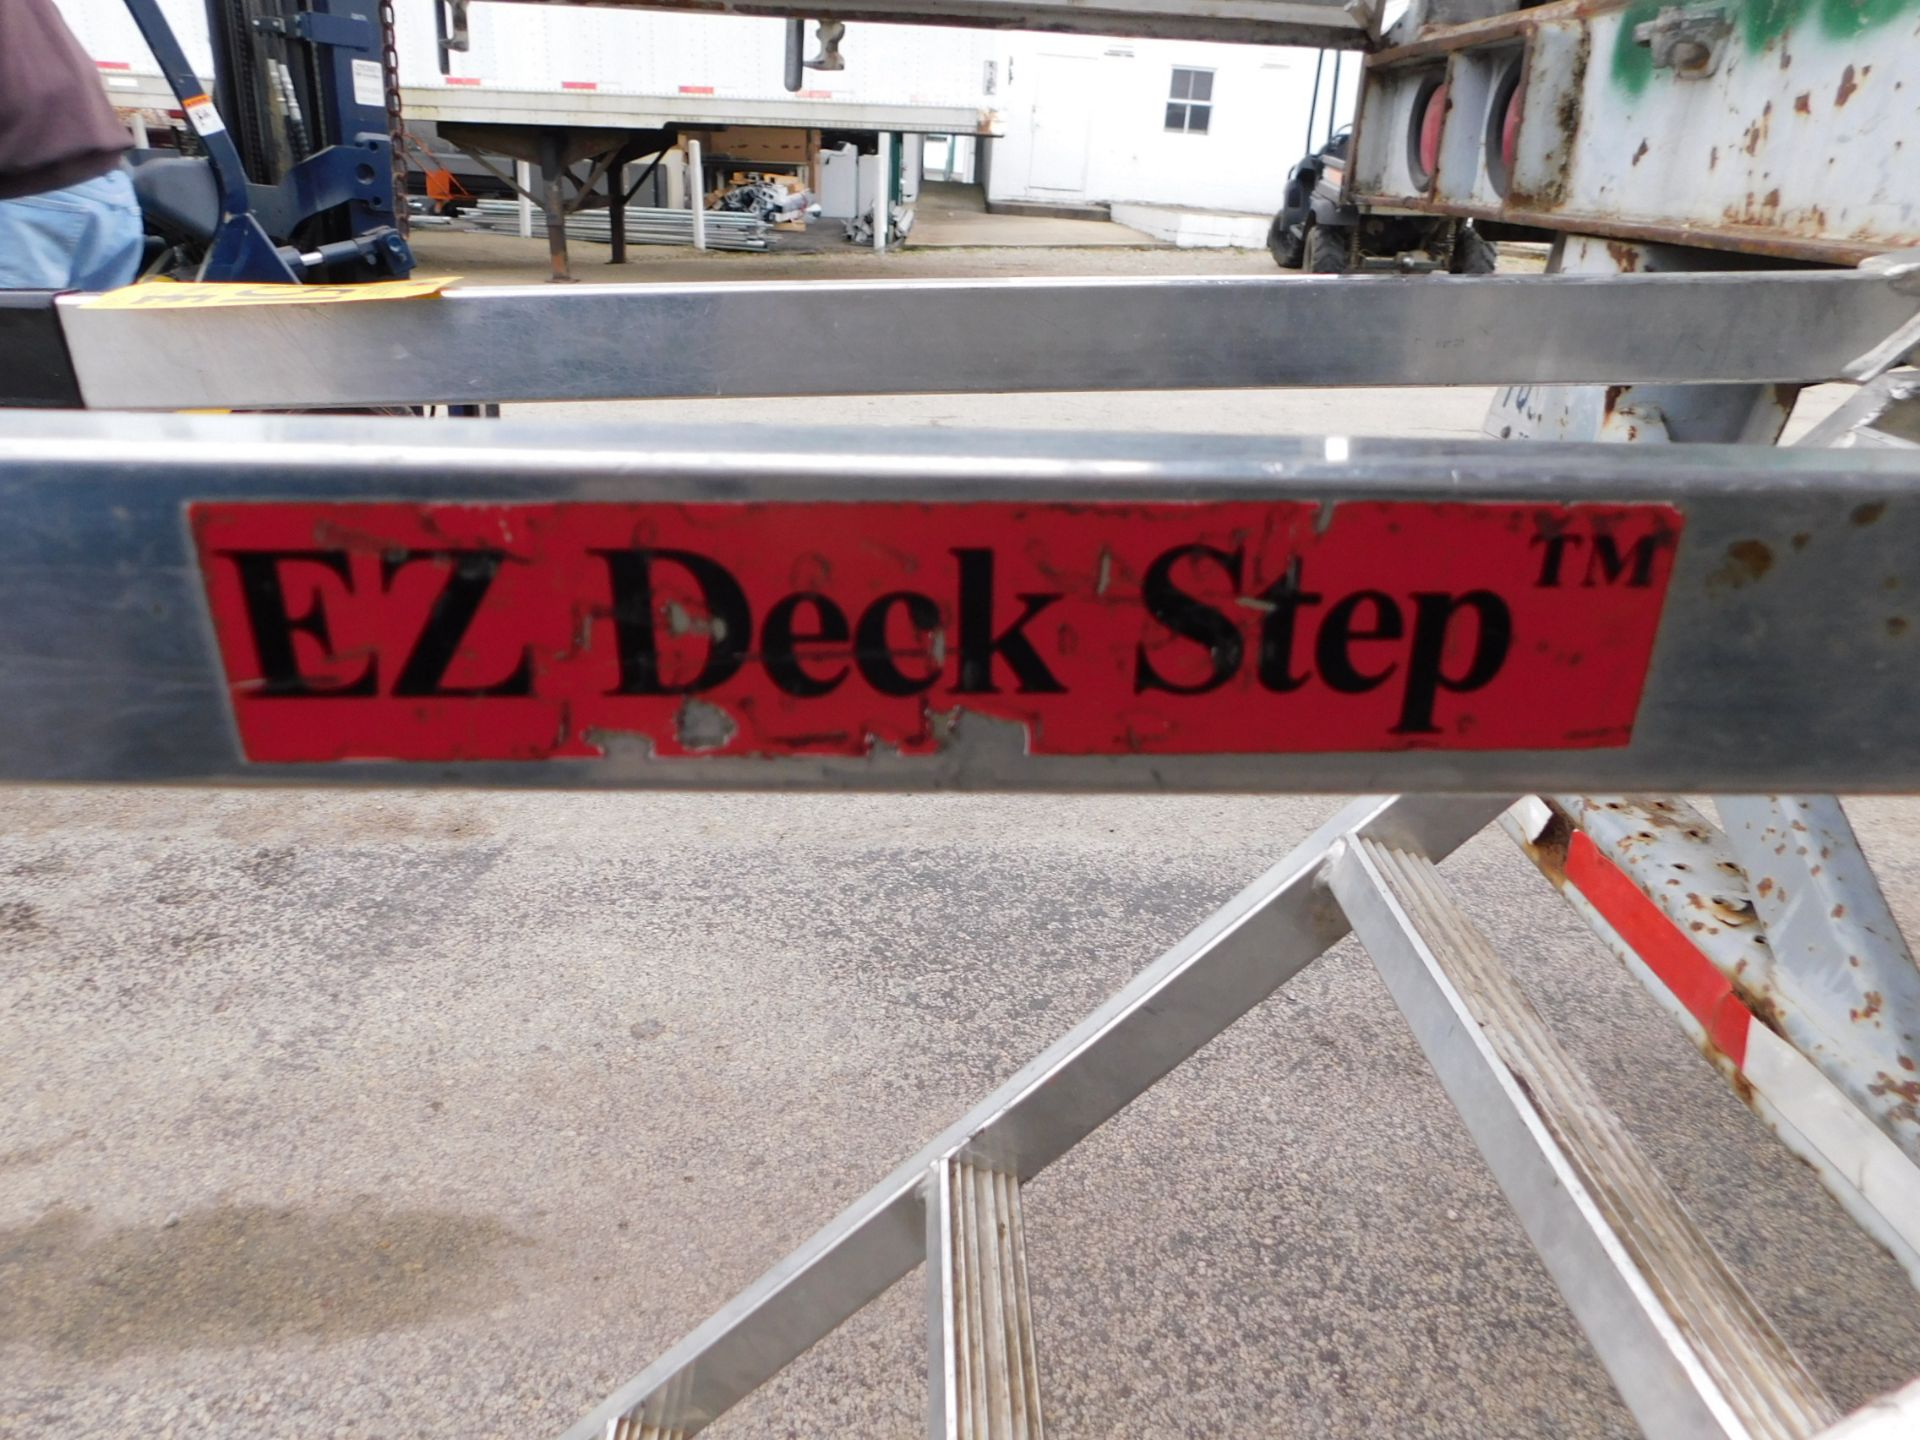 EZ Deck Step, 375 lb. cap. - Image 2 of 3